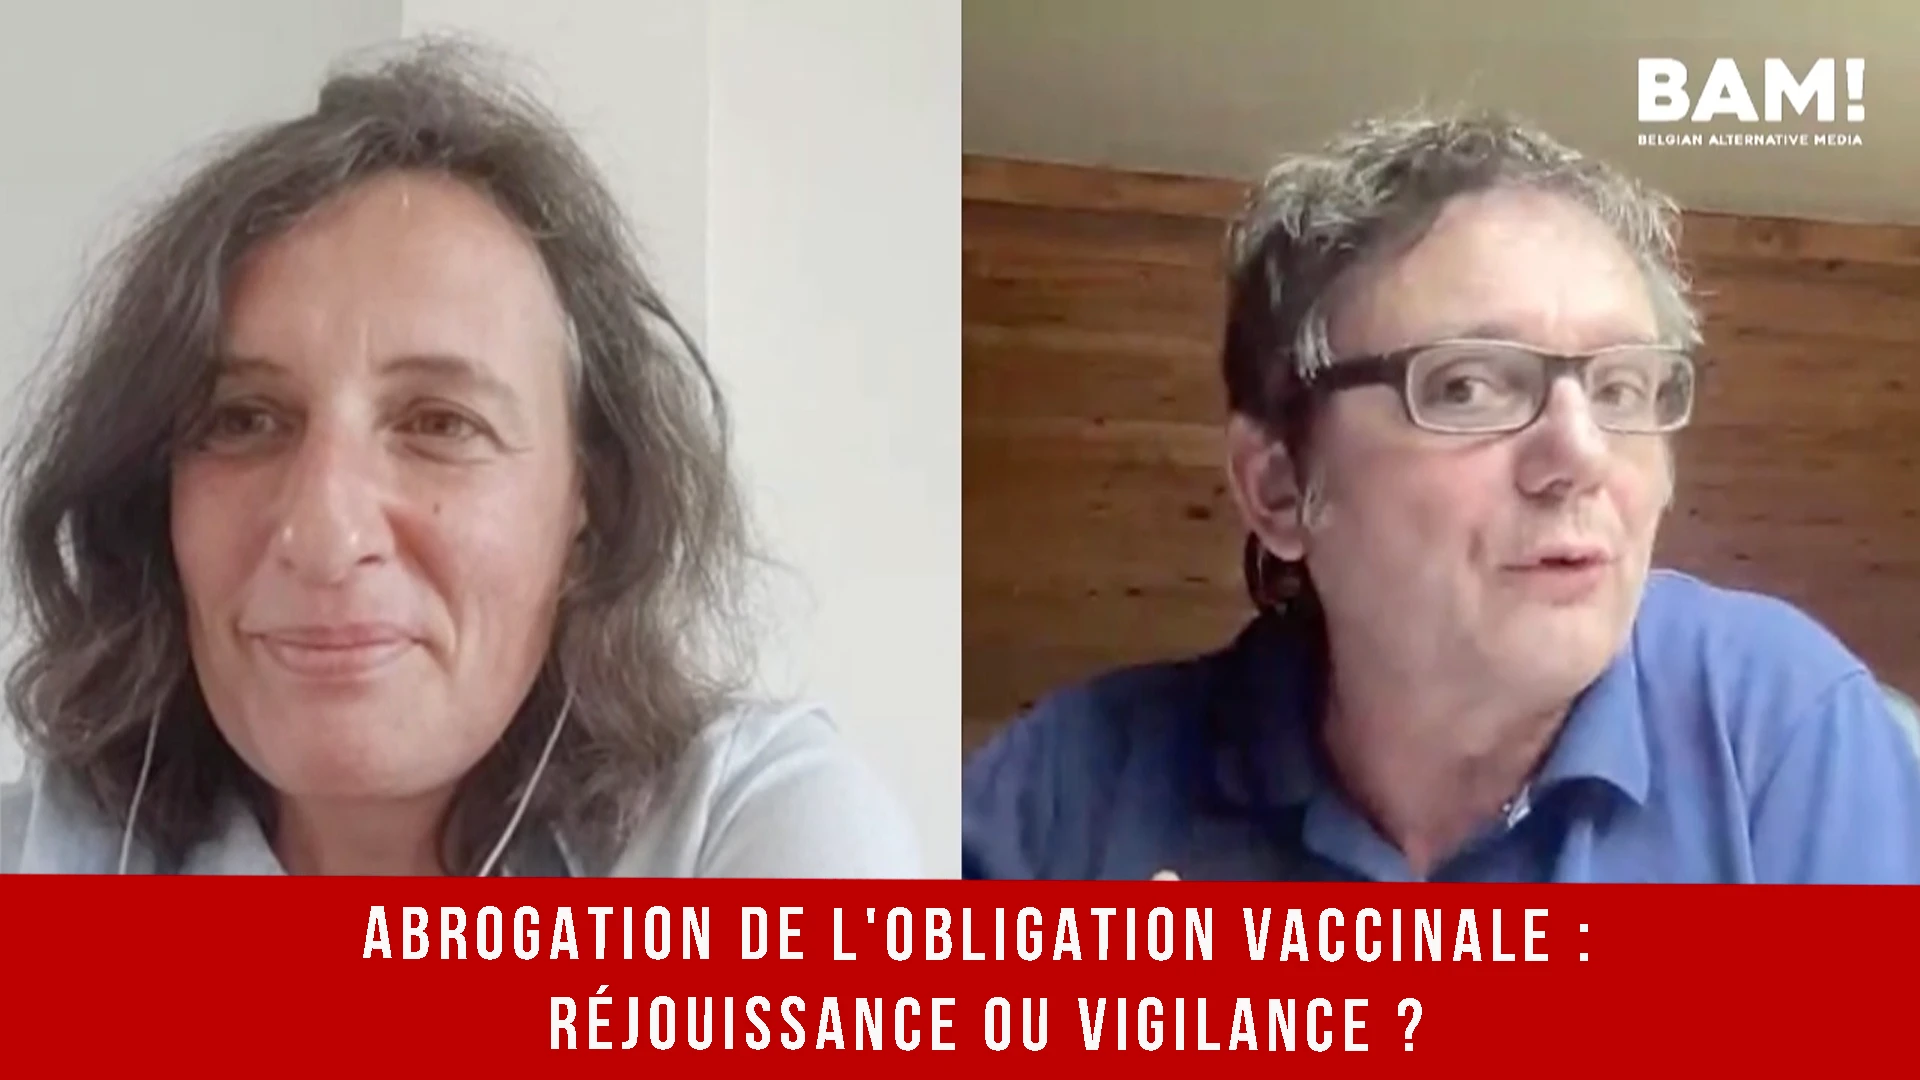 Abrogation de l’obligation vaccinale : RÉJOUISSANCE OU VIGILANCE ?